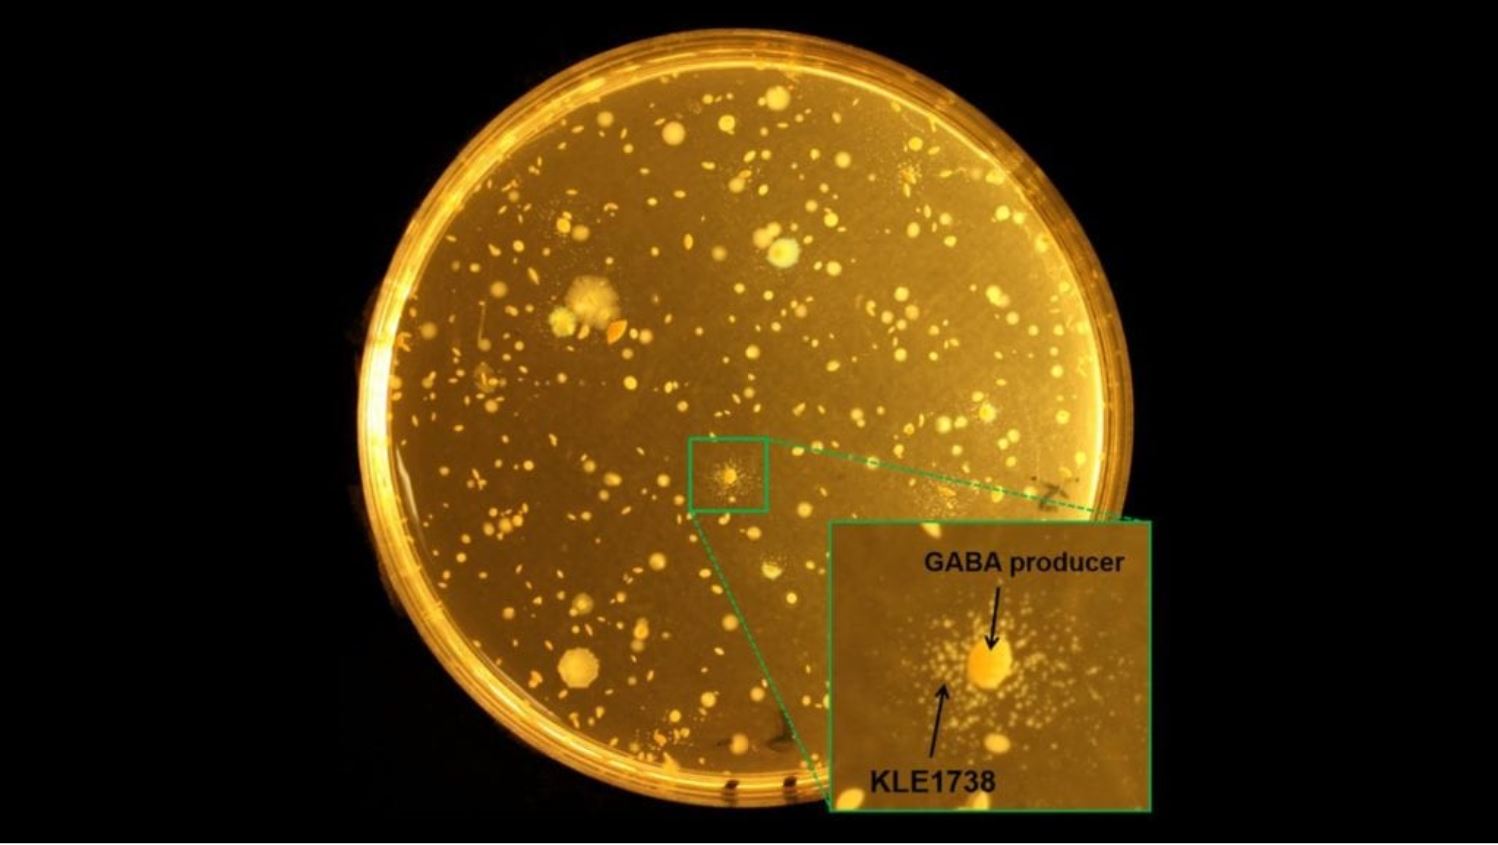 La bacteria KLE1738 depende del ácido gamma-aminobutírico (GABA), un neurotransmisor inhibidor que se encuentra en los sistemas nerviosos centrales de los mamíferos.  Cualquier colonia que apoye el crecimiento de KLE1738 es un productor de GABA. Imagen: Philip Strandwitz / Northeastern University.